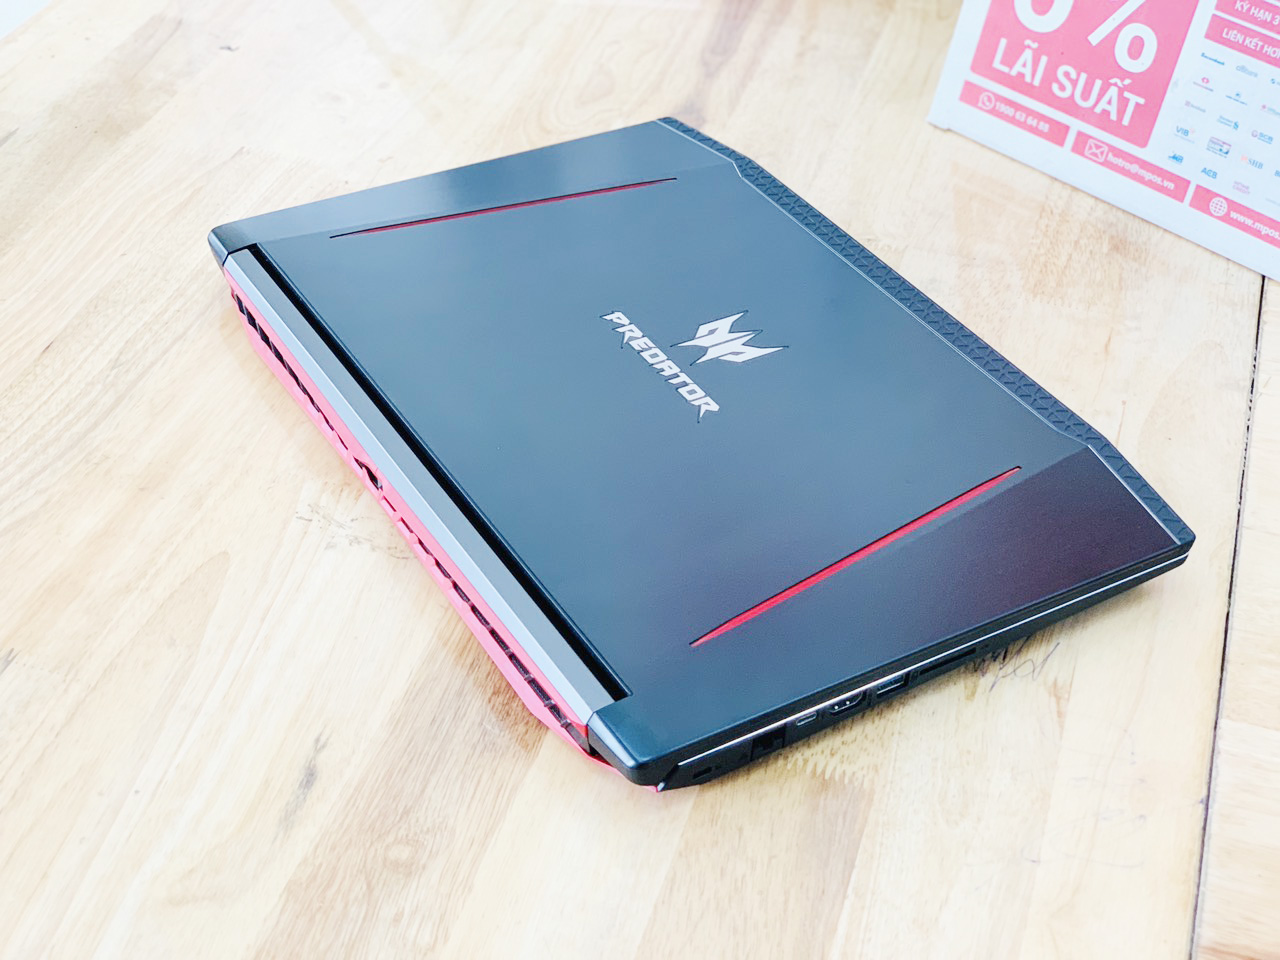 Laptop Gaming Acer Predator G3-571